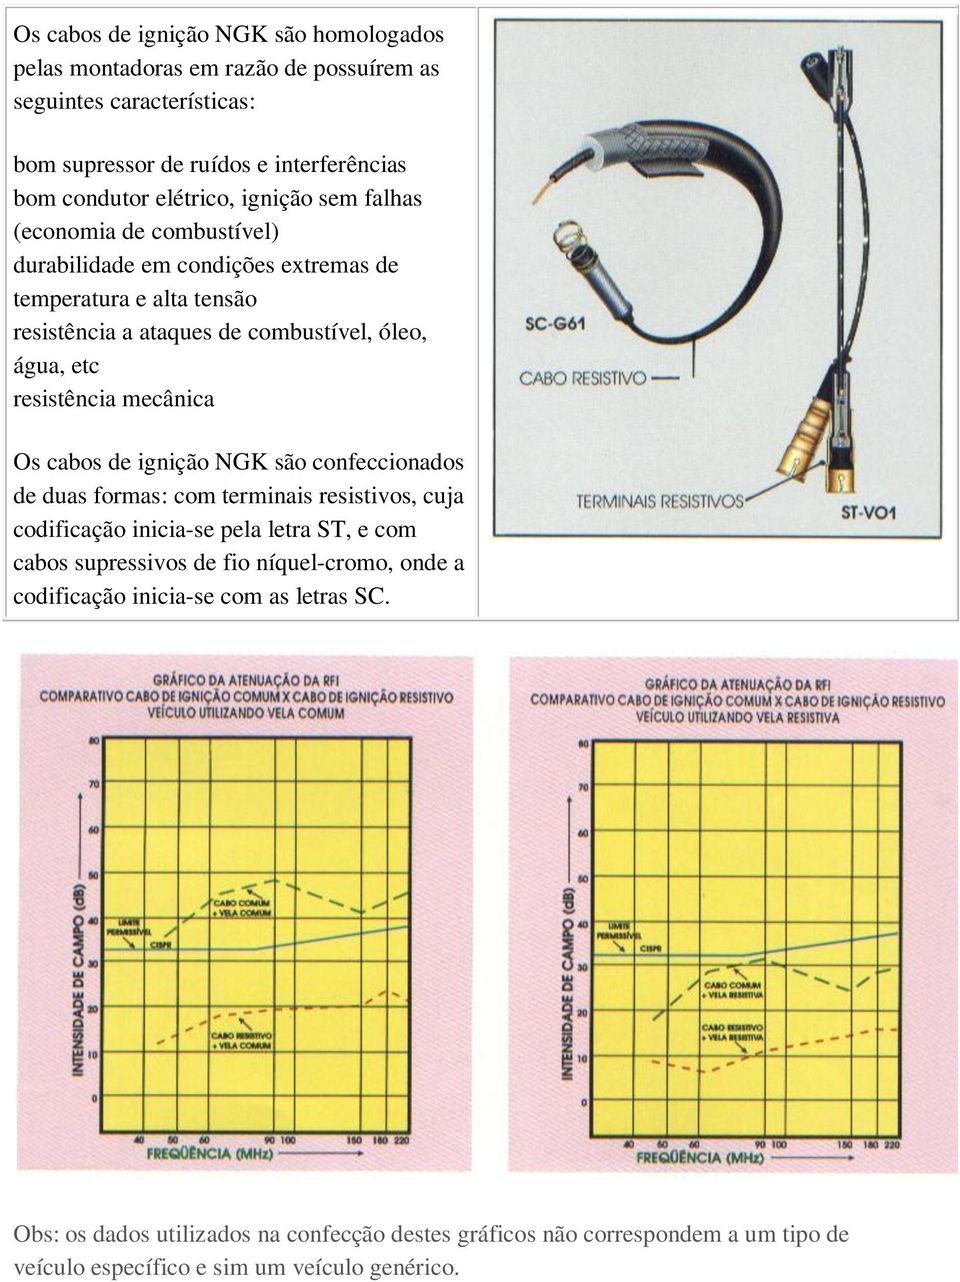 mecânica Os cabos de ignição NGK são confeccionados de duas formas: com terminais resistivos, cuja codificação inicia-se pela letra ST, e com cabos supressivos de fio